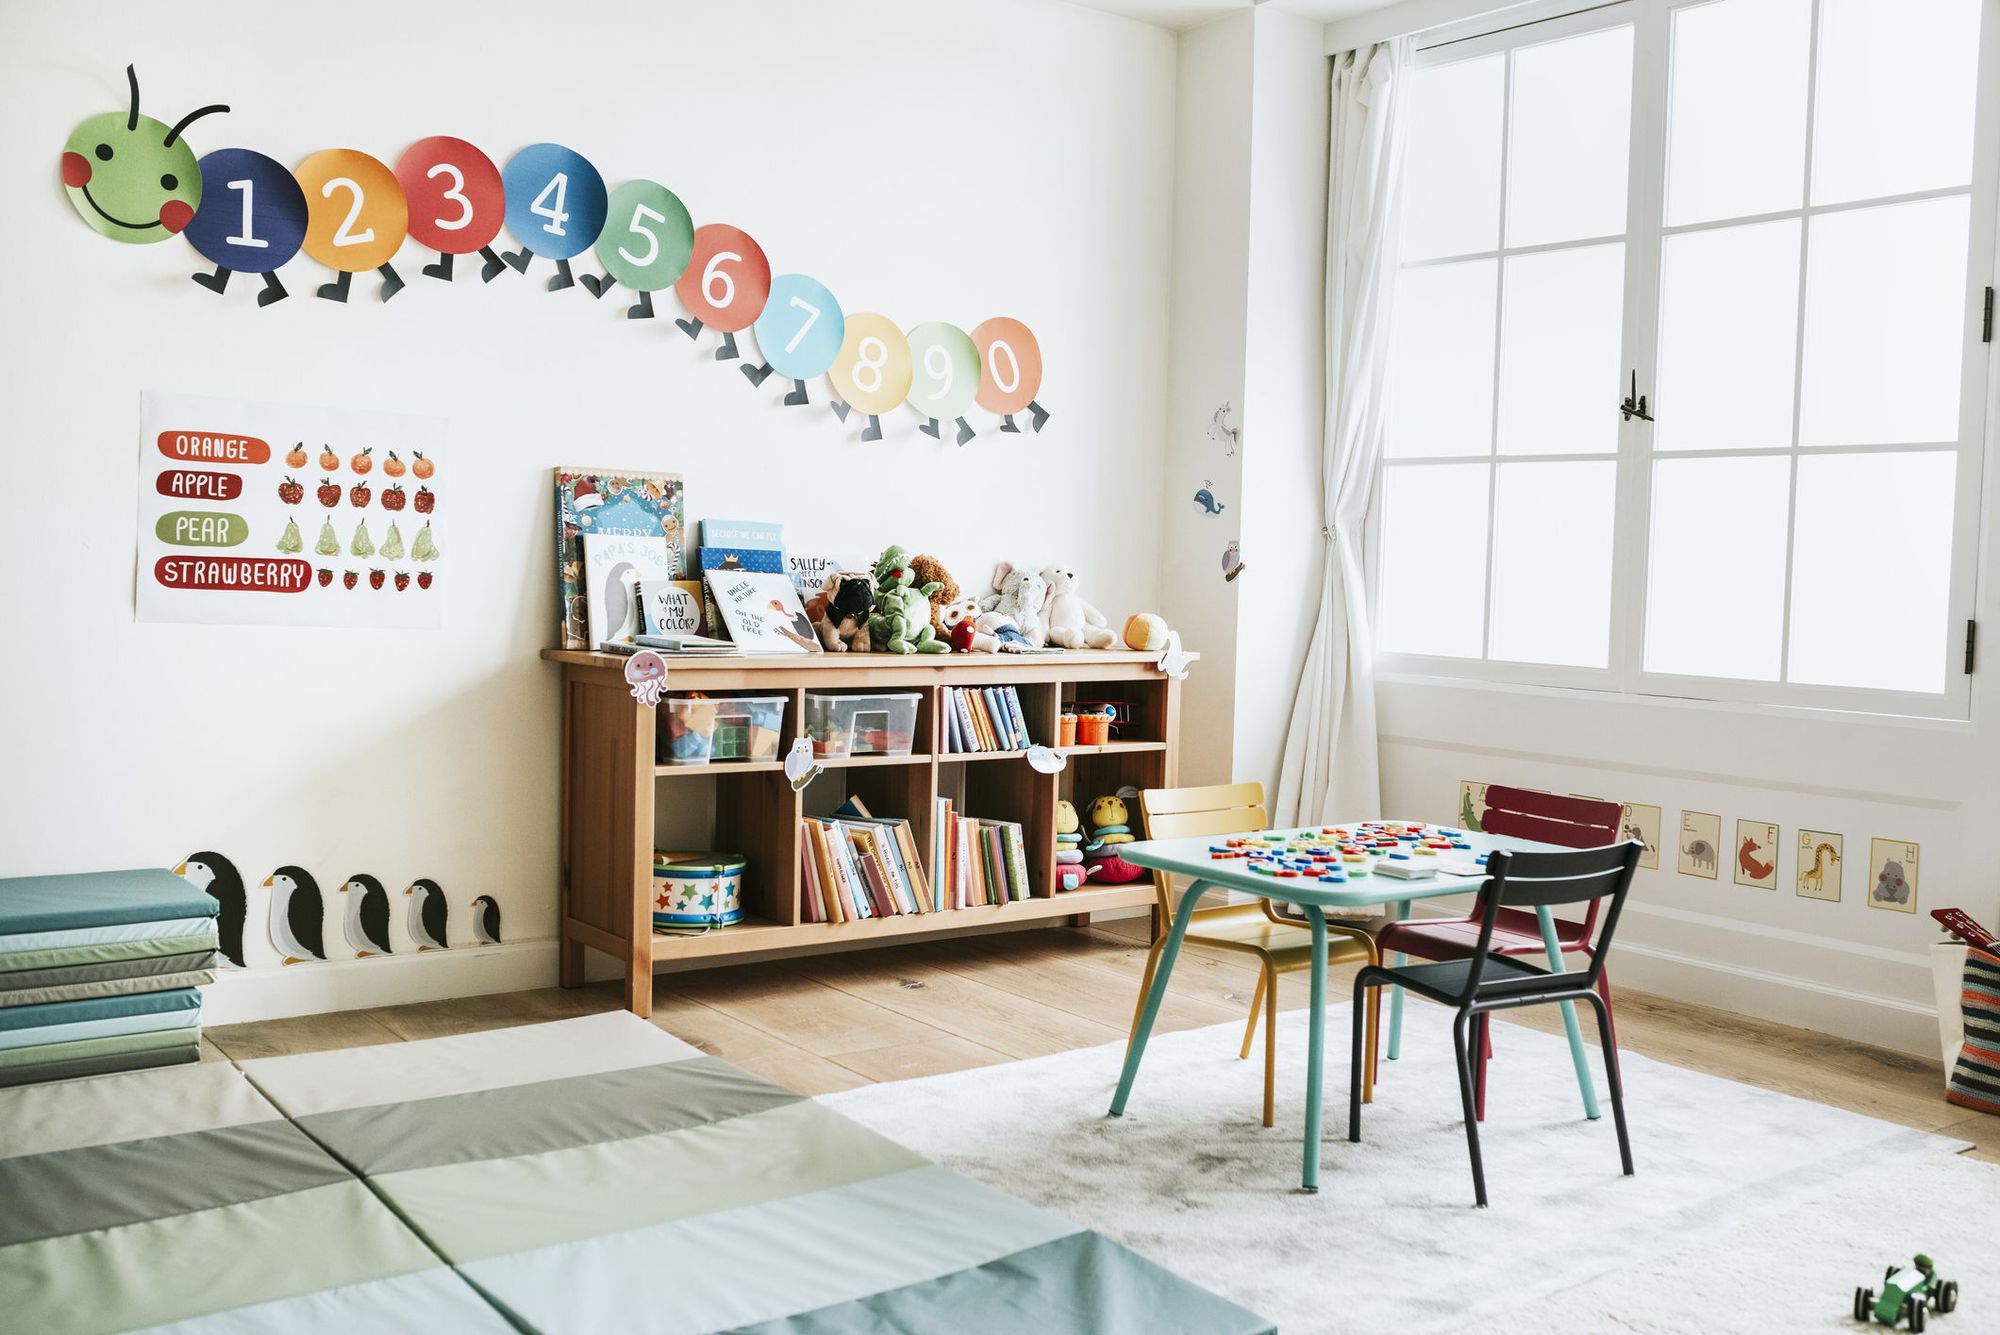 Ngắm phòng riêng của con gái Cường Đô la: Loạt đồ chơi đắt đỏ kết hợp phương pháp giáo dục Montessori - Ảnh 7.